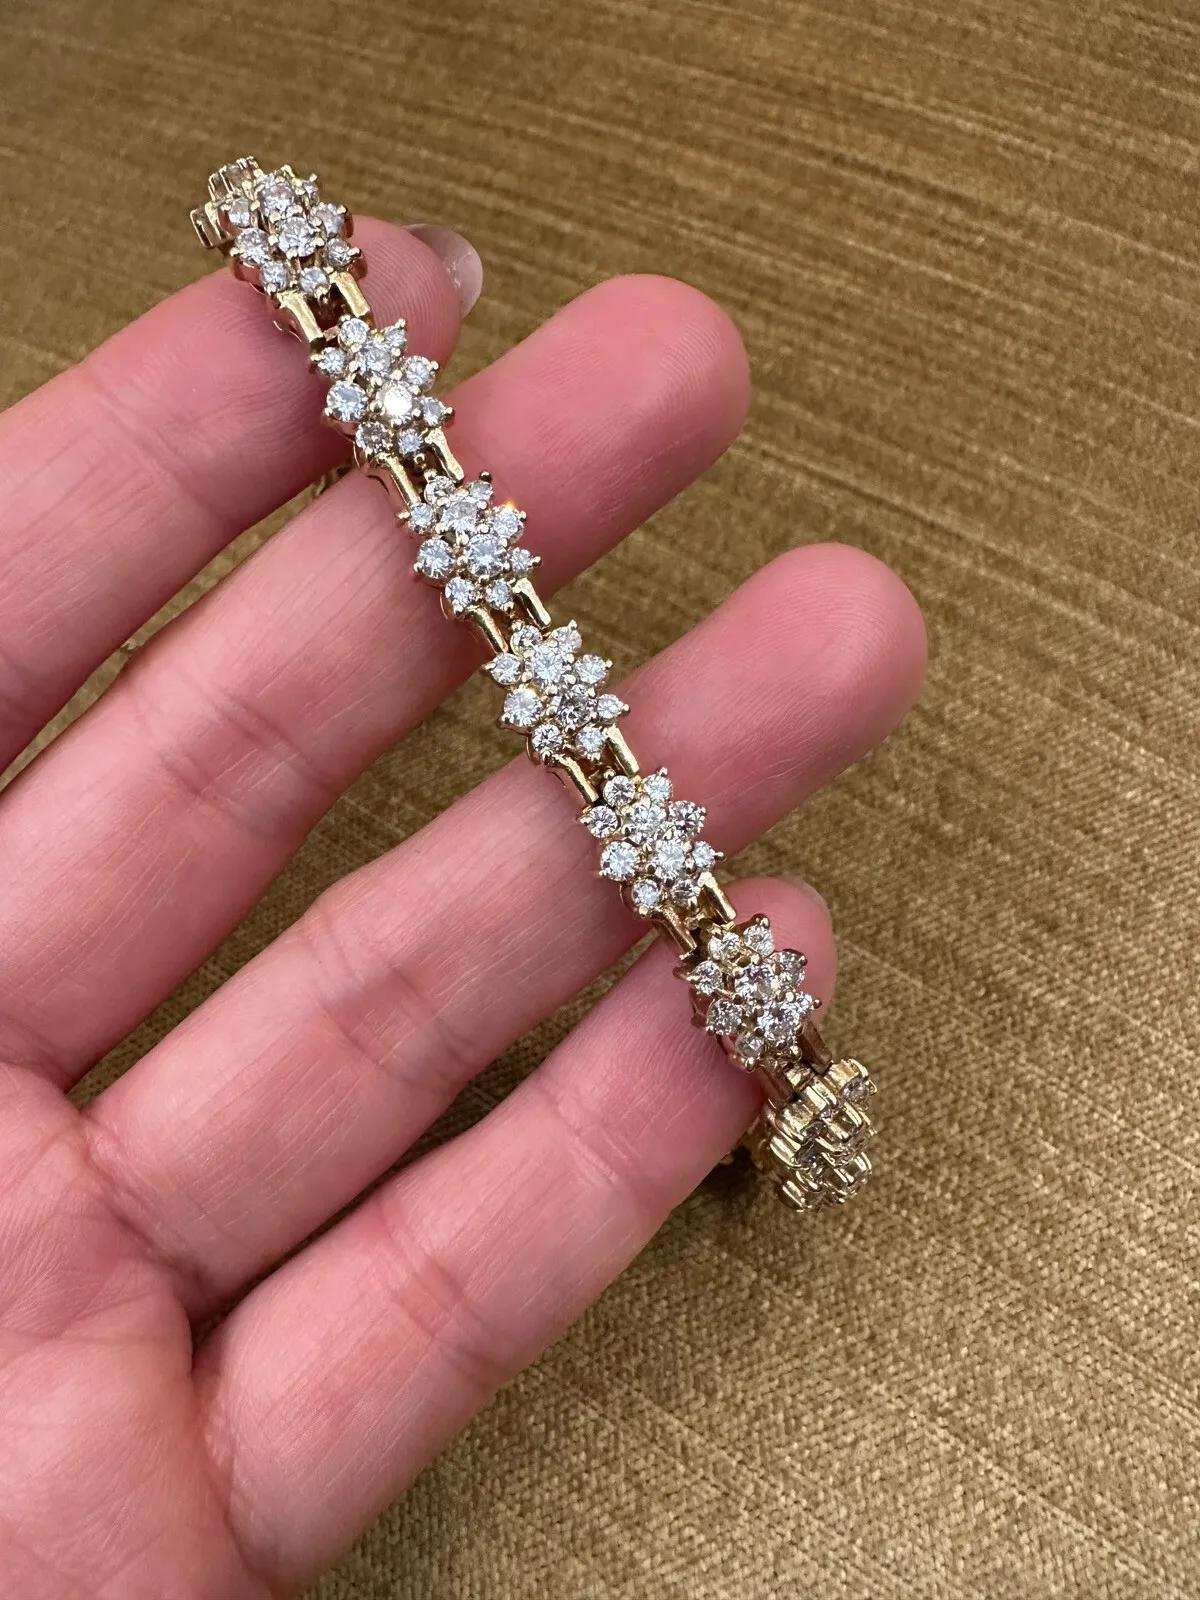 Bracelet Vintage Cluster diamant rond 6.00 Carat poids total en or jaune 14k 

Le bracelet en diamant comprend 15 maillons en diamant composé de diamants ronds et brillants, sertis dans de l'or jaune 14k. Le bracelet est sécurisé par un fermoir à